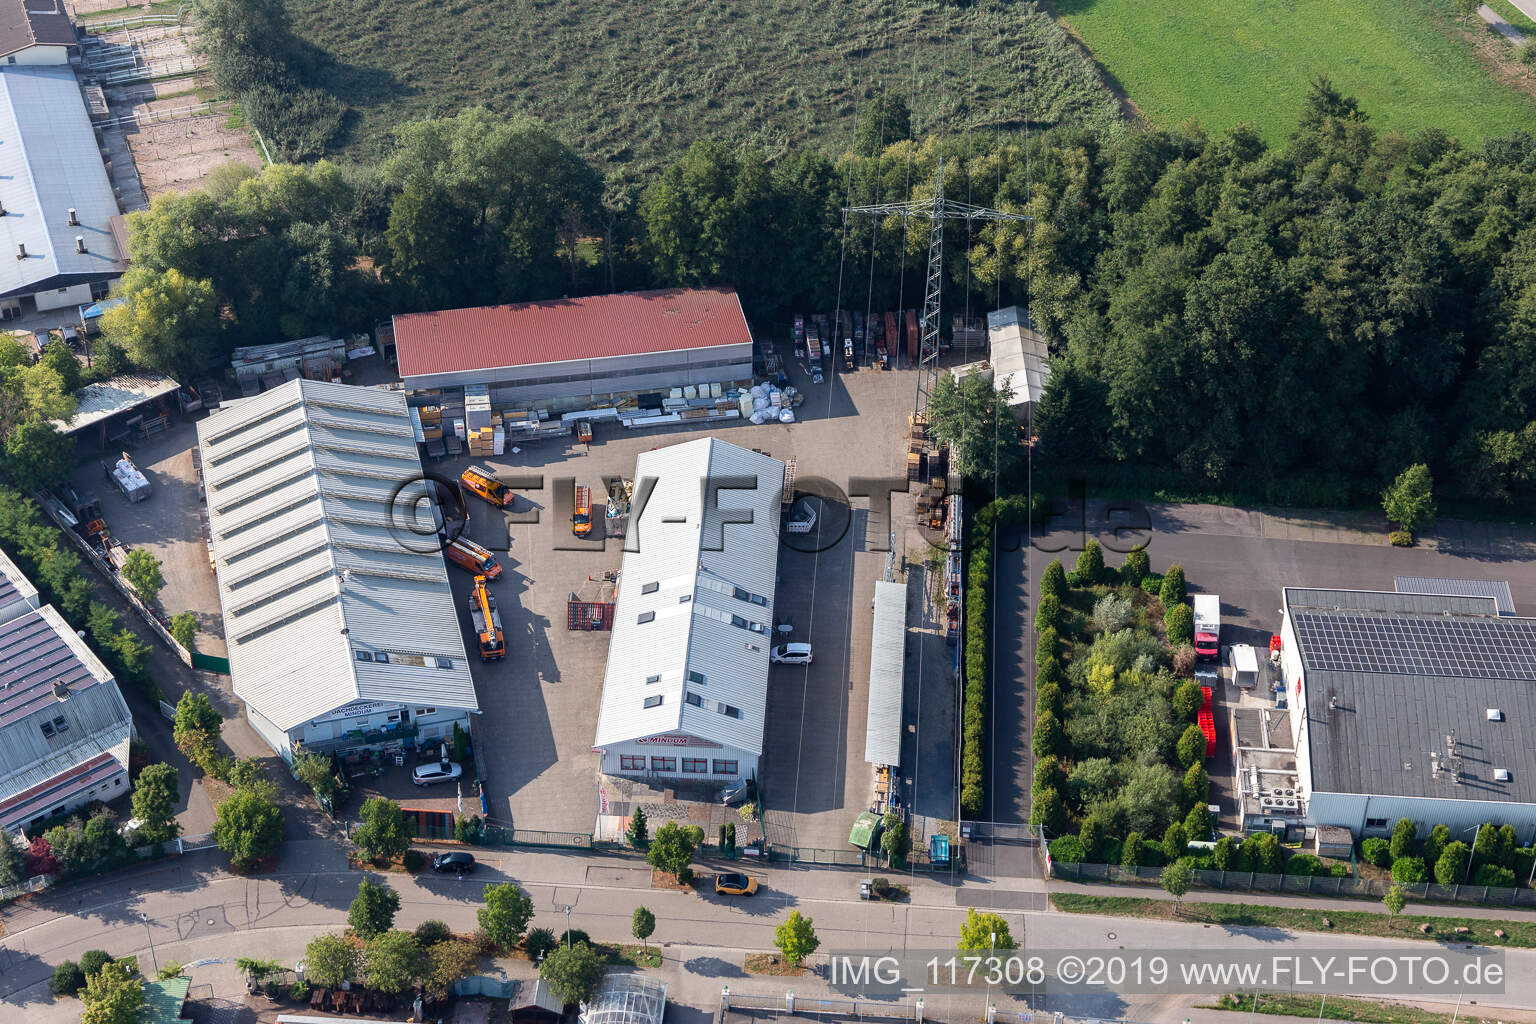 Dachdeckerei, Gerüstbau und Bauspenglerei Mindum, im Gewerbgegebiet Horst in Kandel im Bundesland Rheinland-Pfalz, Deutschland